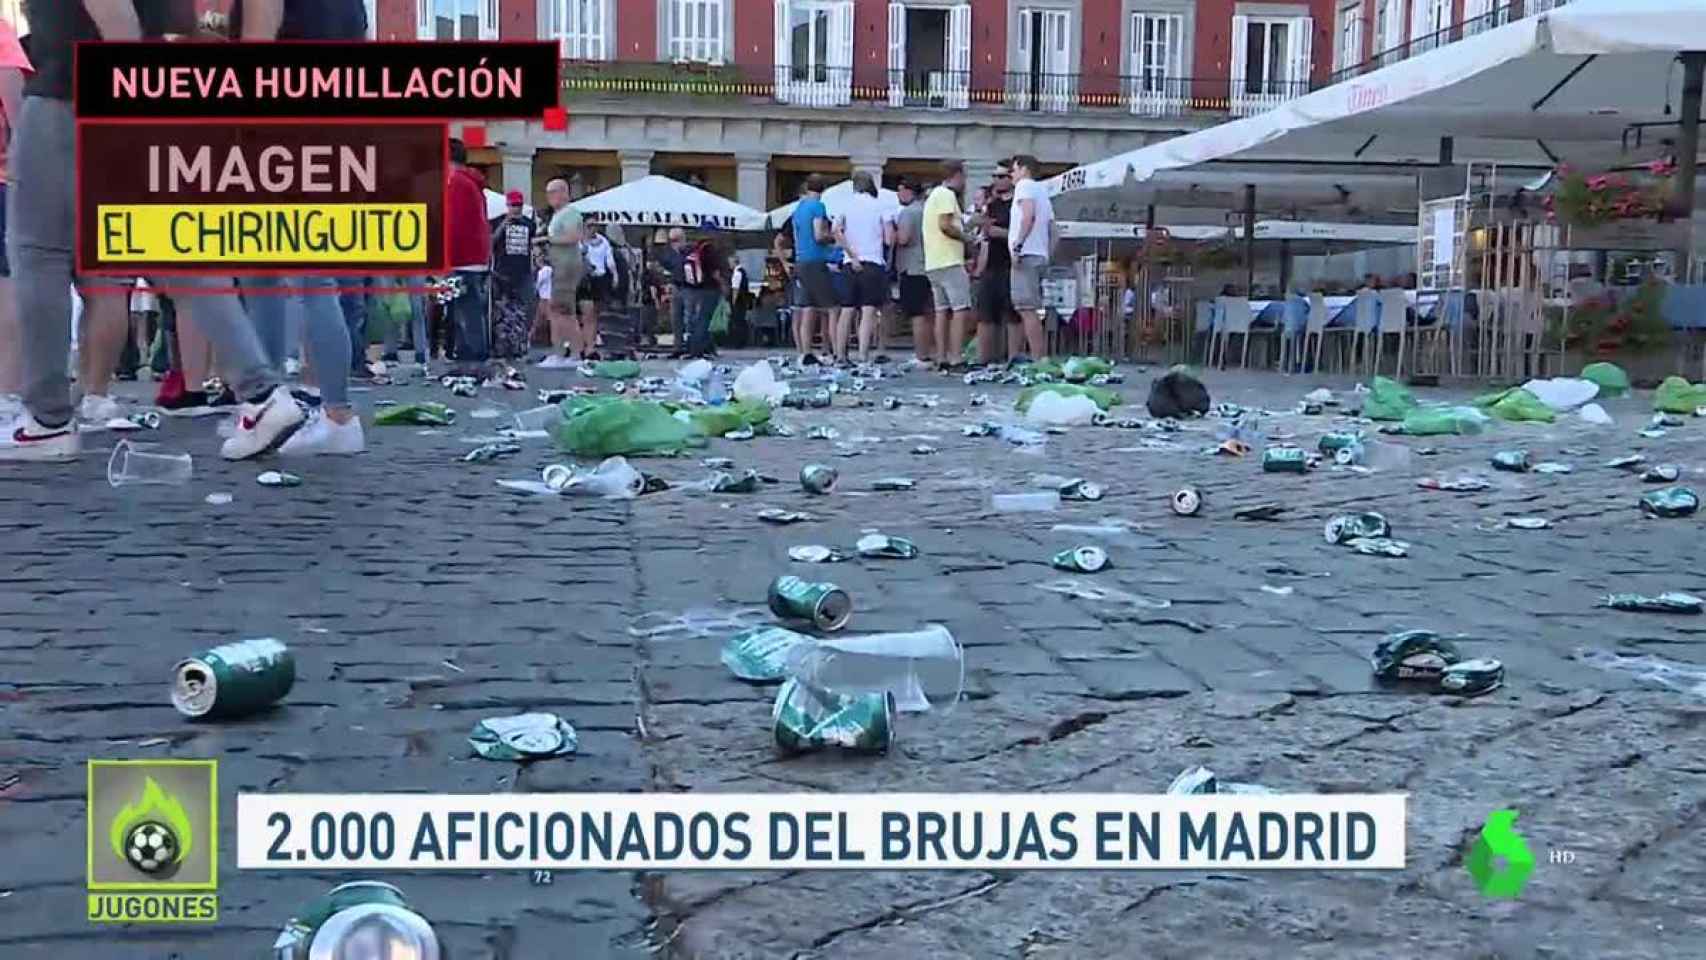 Aficionados Brujas en Madrid